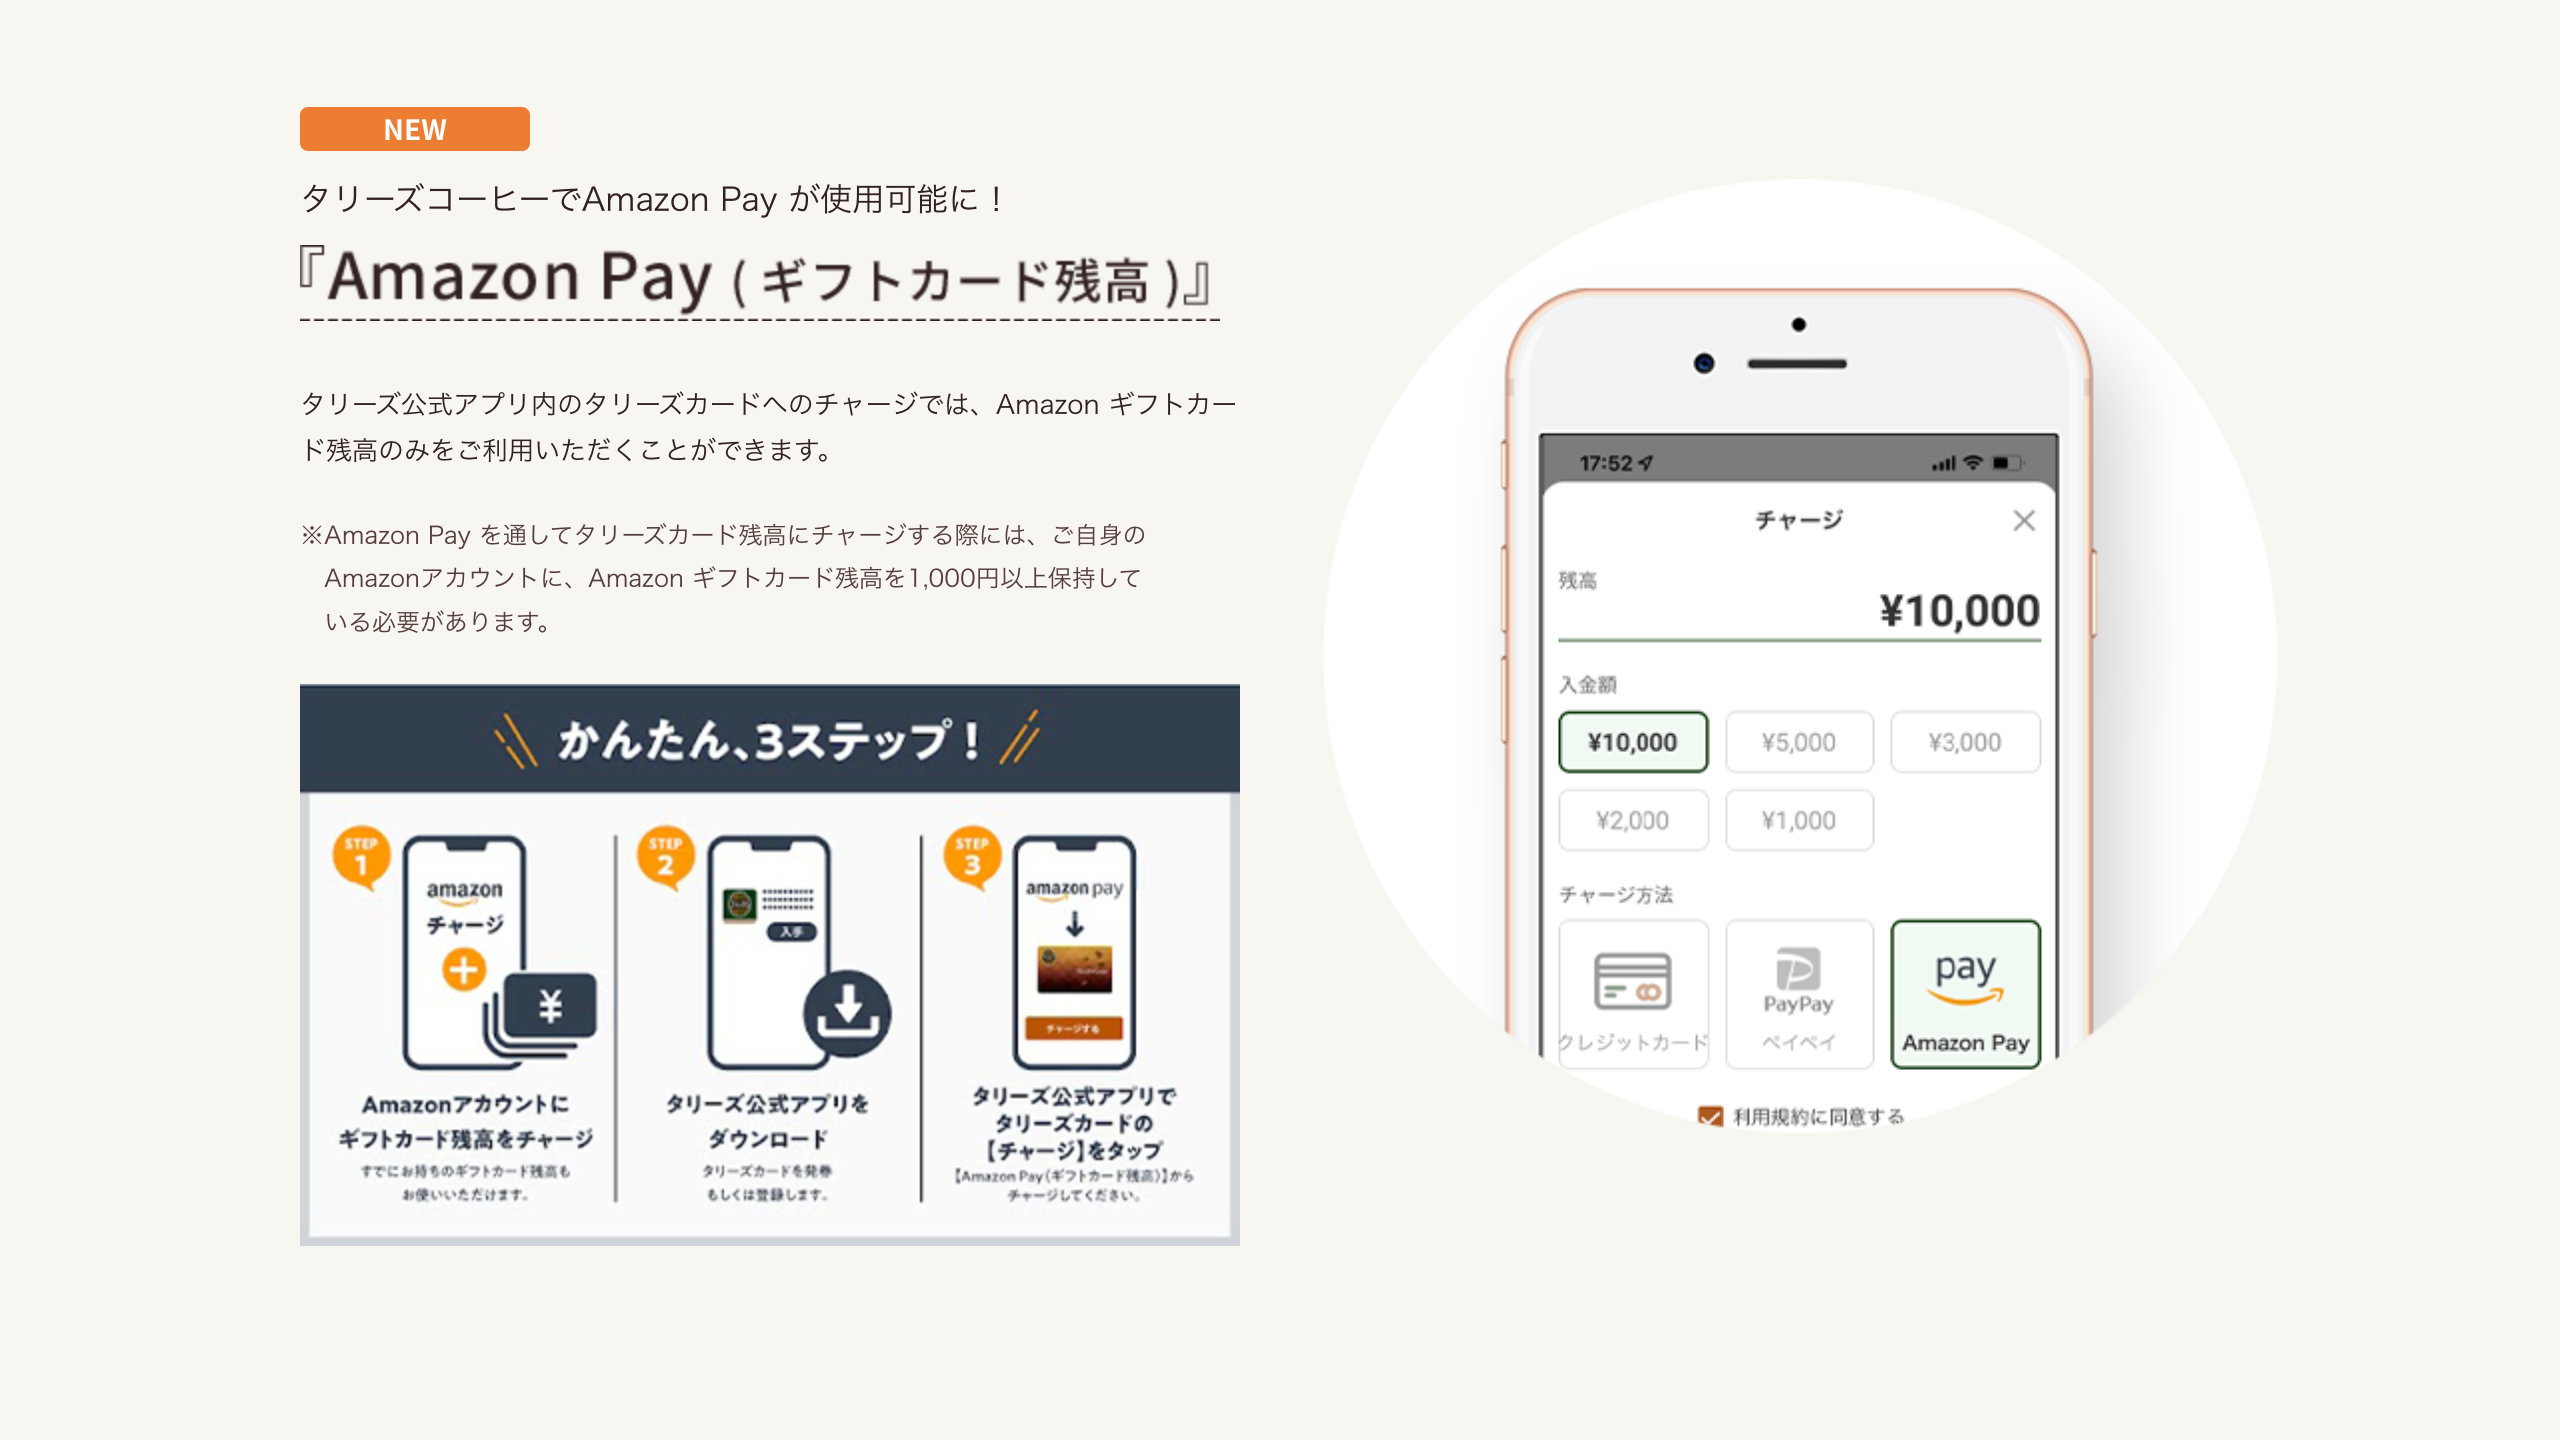 【Amazon Pay】Amazonギフトカード残高からタリーズ公式アプリ内のタリーズカードへ入金可能に、実店舗での支払いに対応